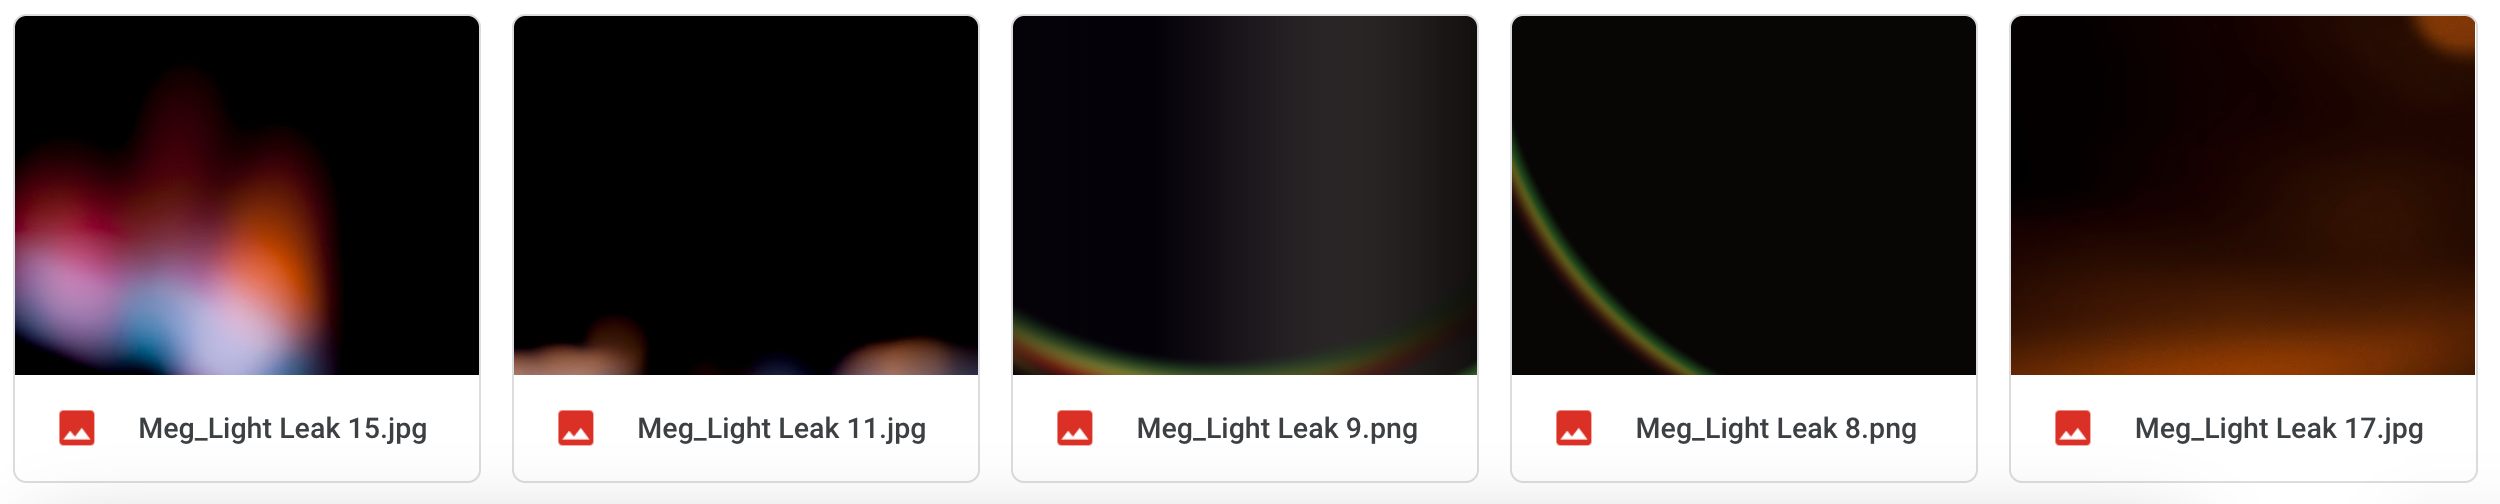 Magical Light Leaks - Meg Bitton Productions